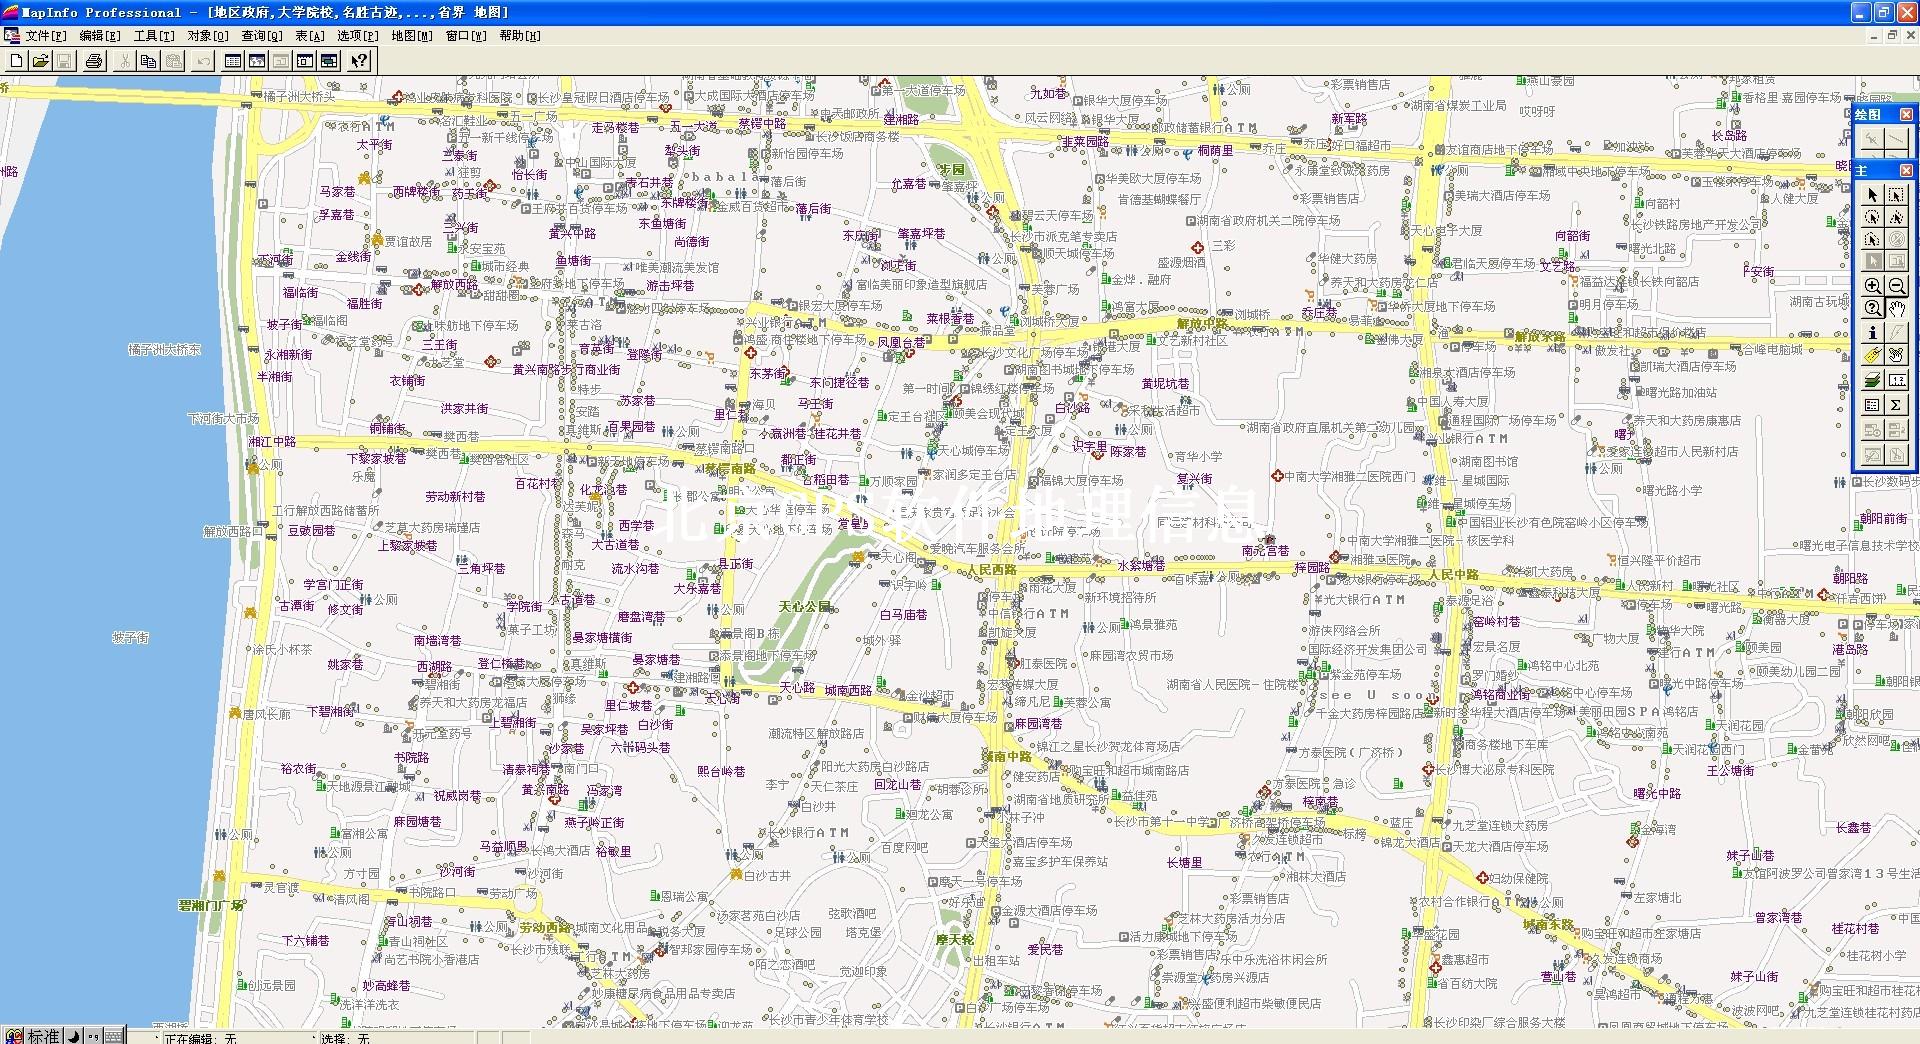 关键词:20年长沙市shp,20年长沙市导航电子地图,20年长沙市